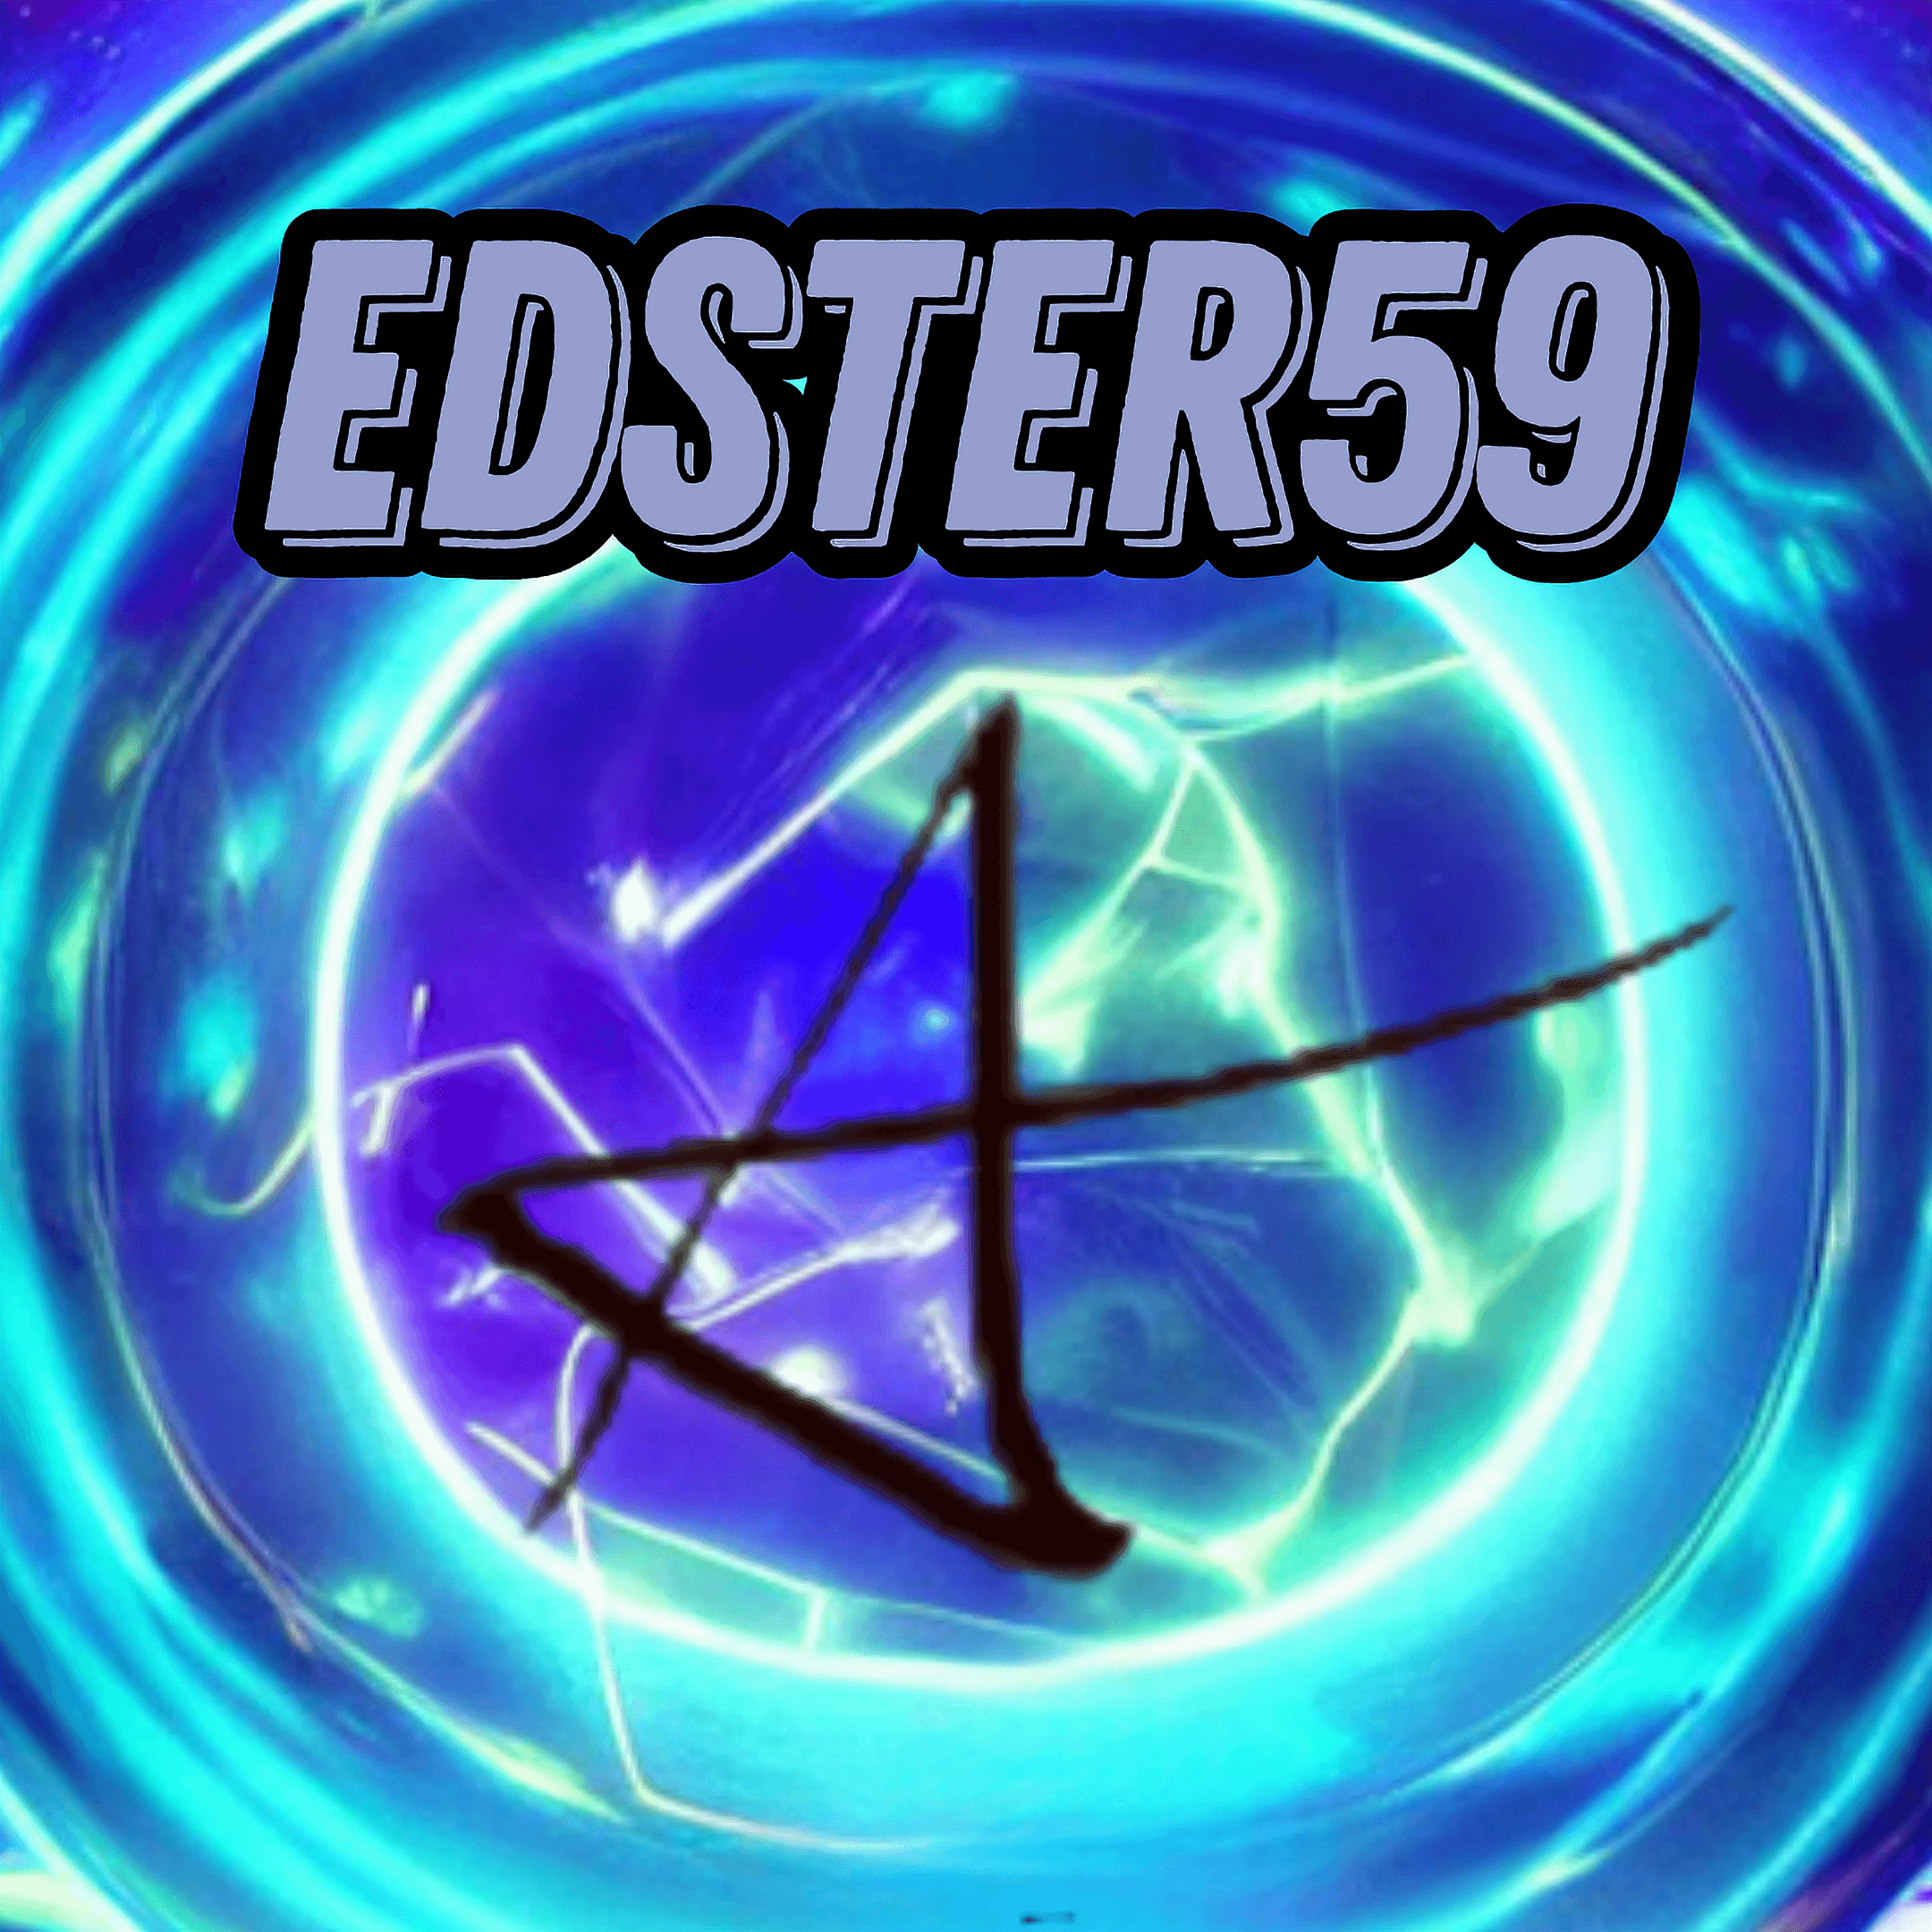 Edster59 - Membership